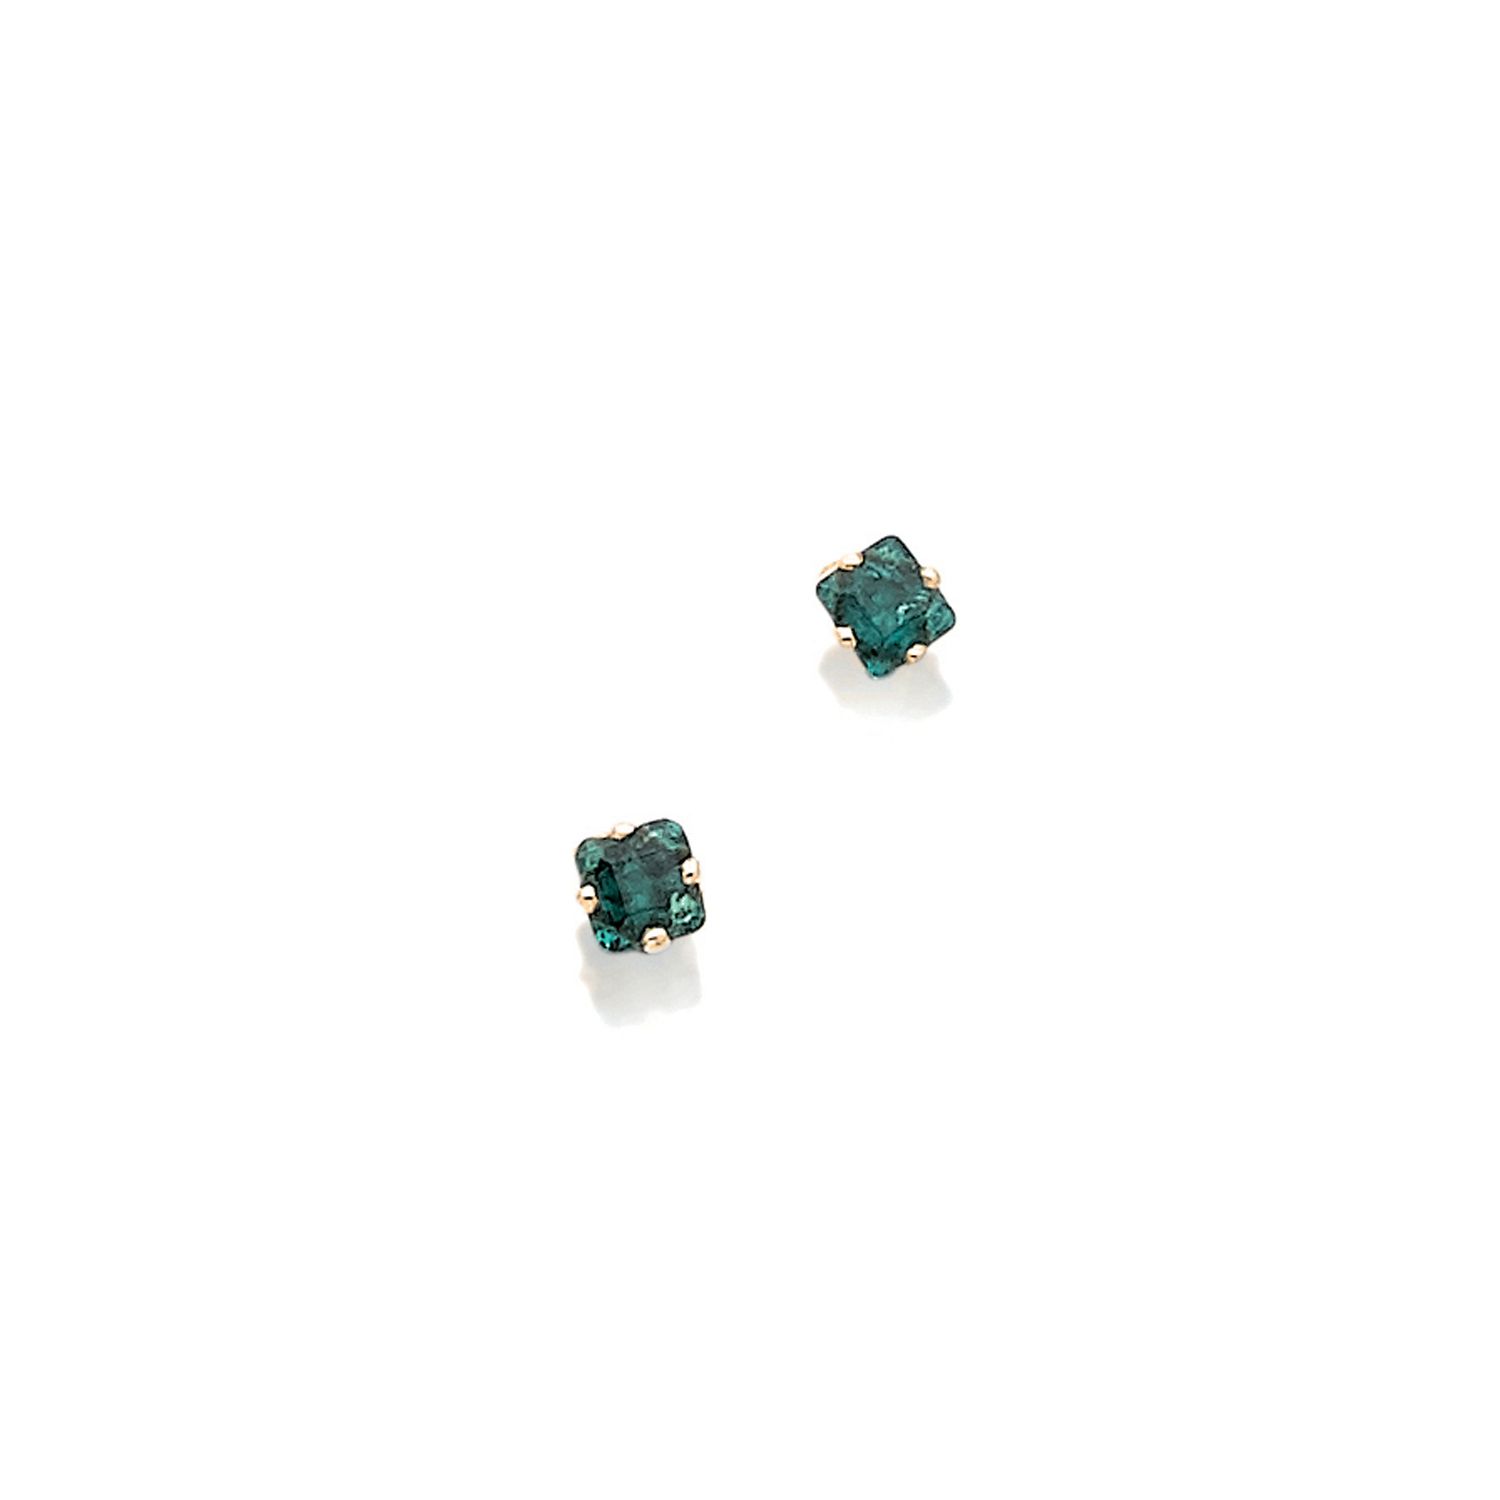 Null 一对18K(750‰)黄金耳环，每只耳环上都镶嵌着一颗长方形的爪形绿宝石

法国作品

毛重：1.6克

在一个署名为加兰的箱子里，巴黎和平街15号